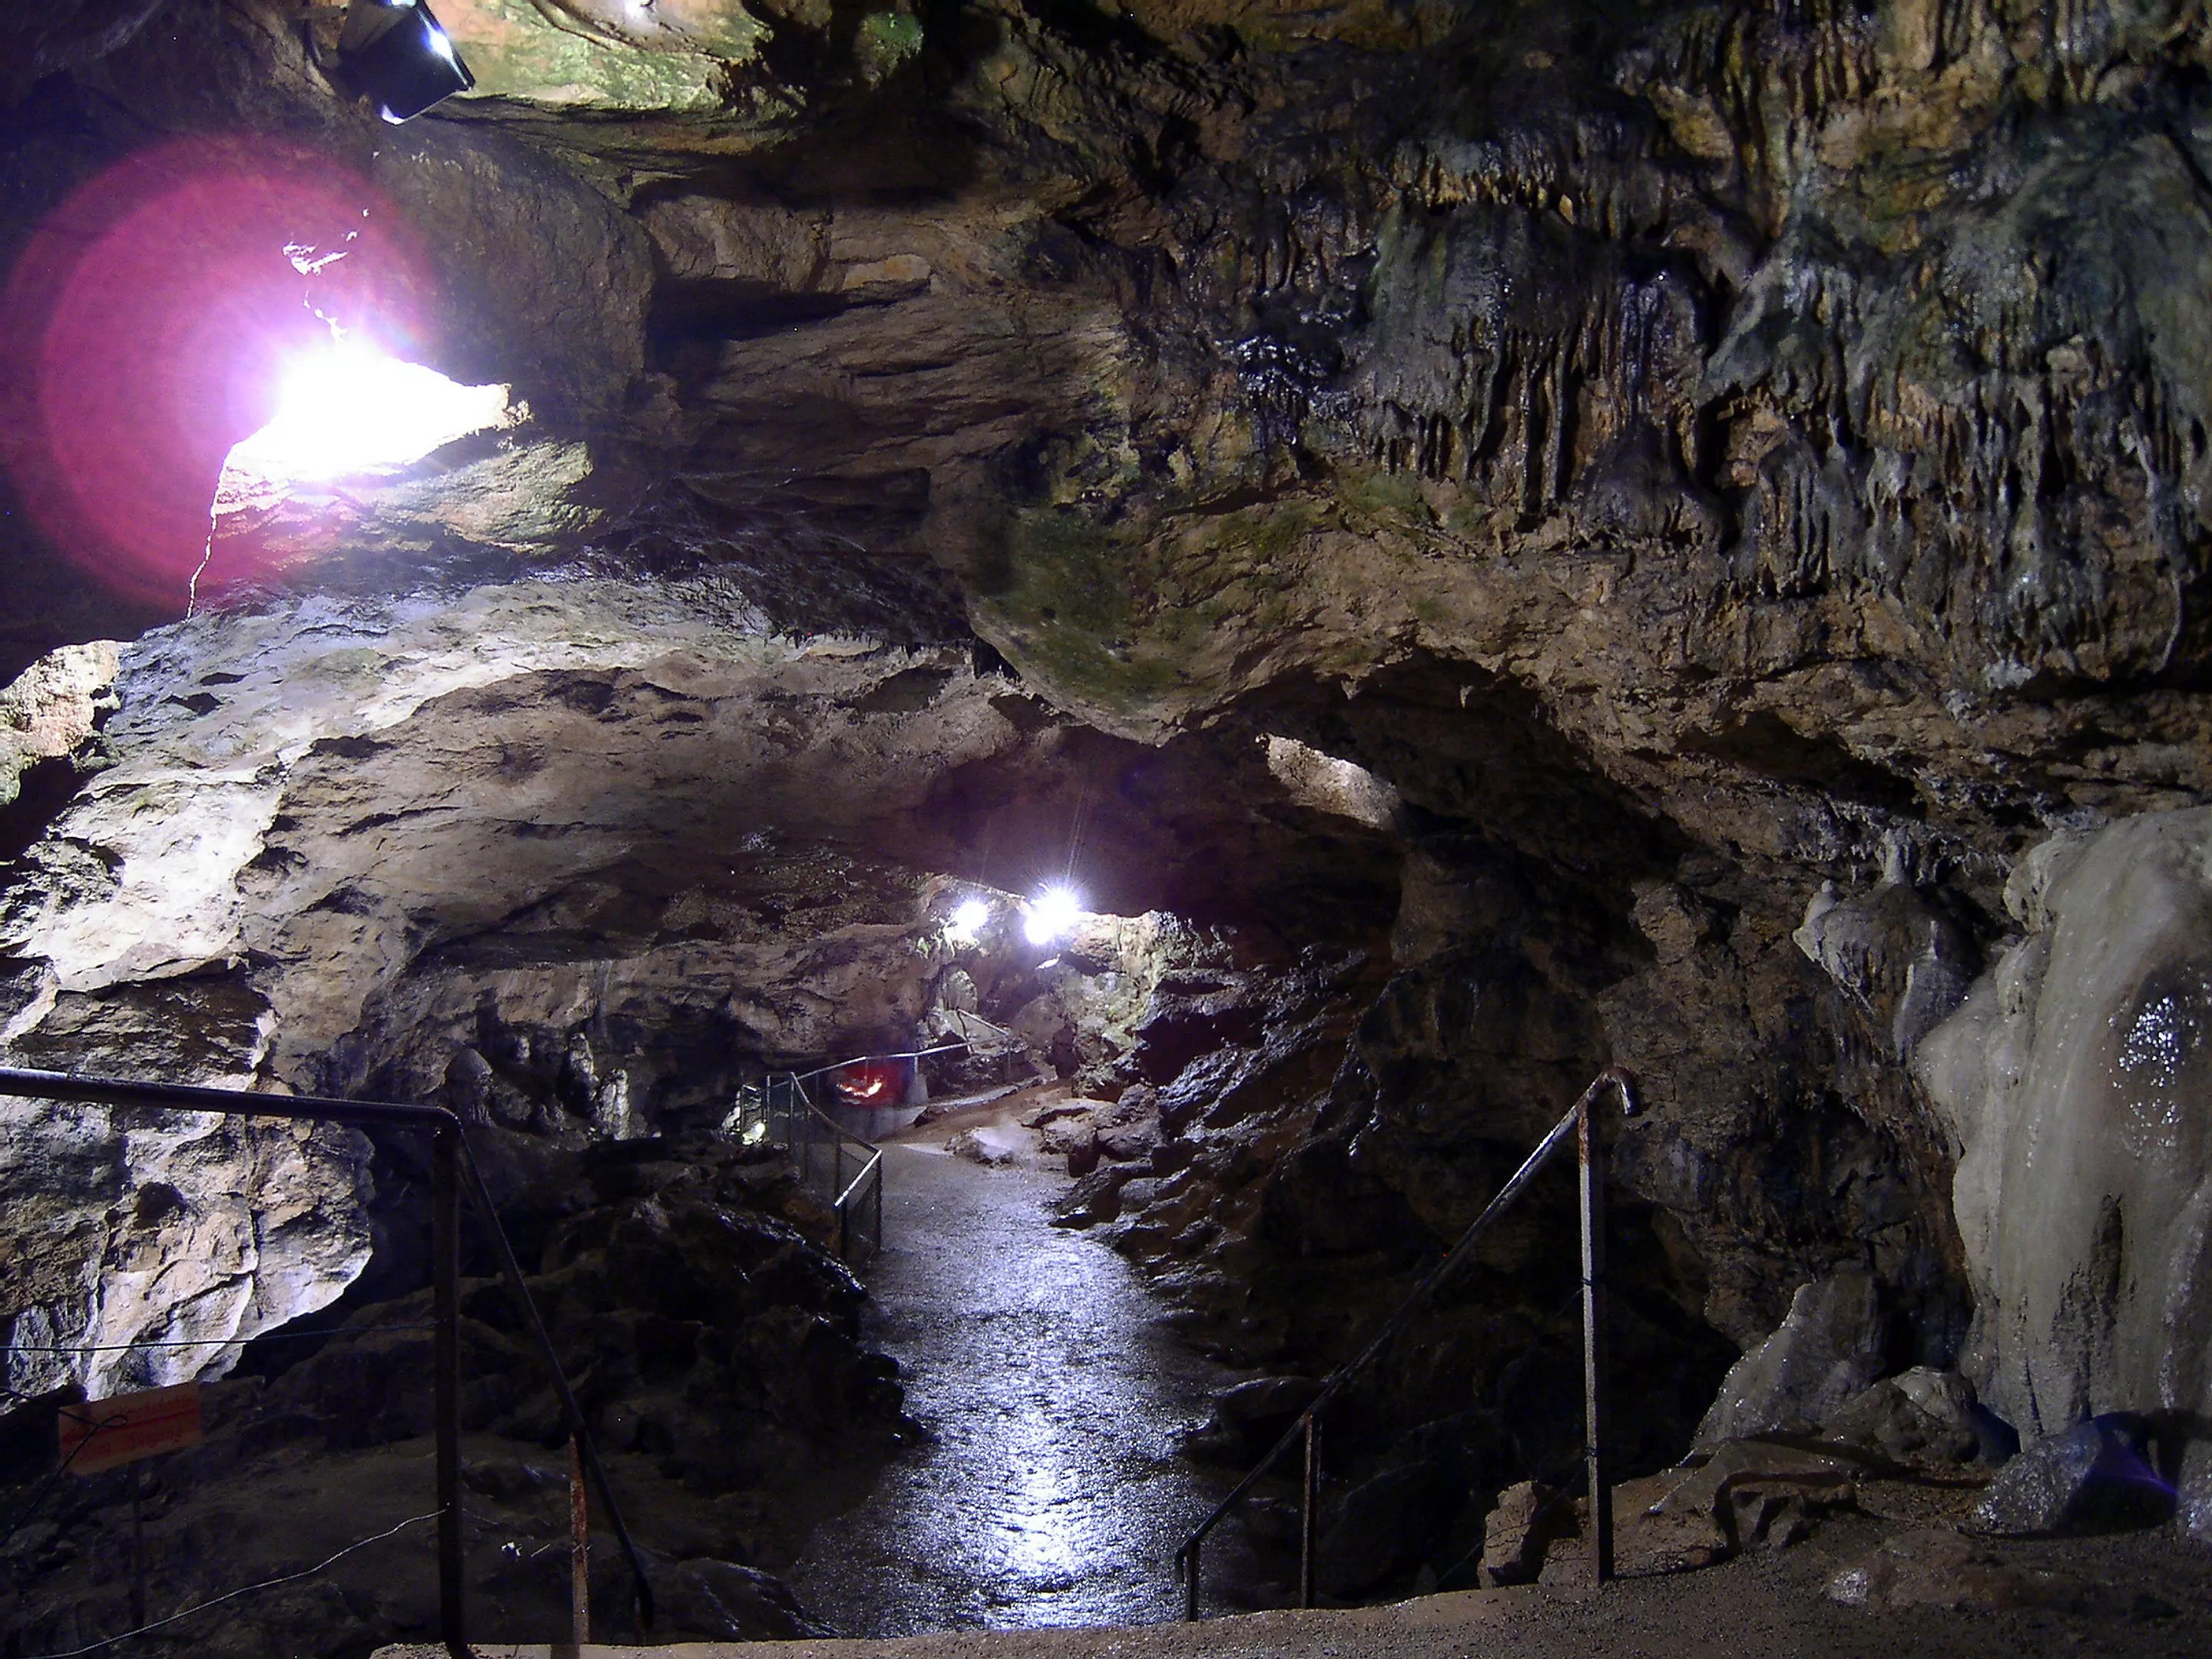 Nebelhohle in Germany, Europe | Caves & Underground Places - Rated 3.9